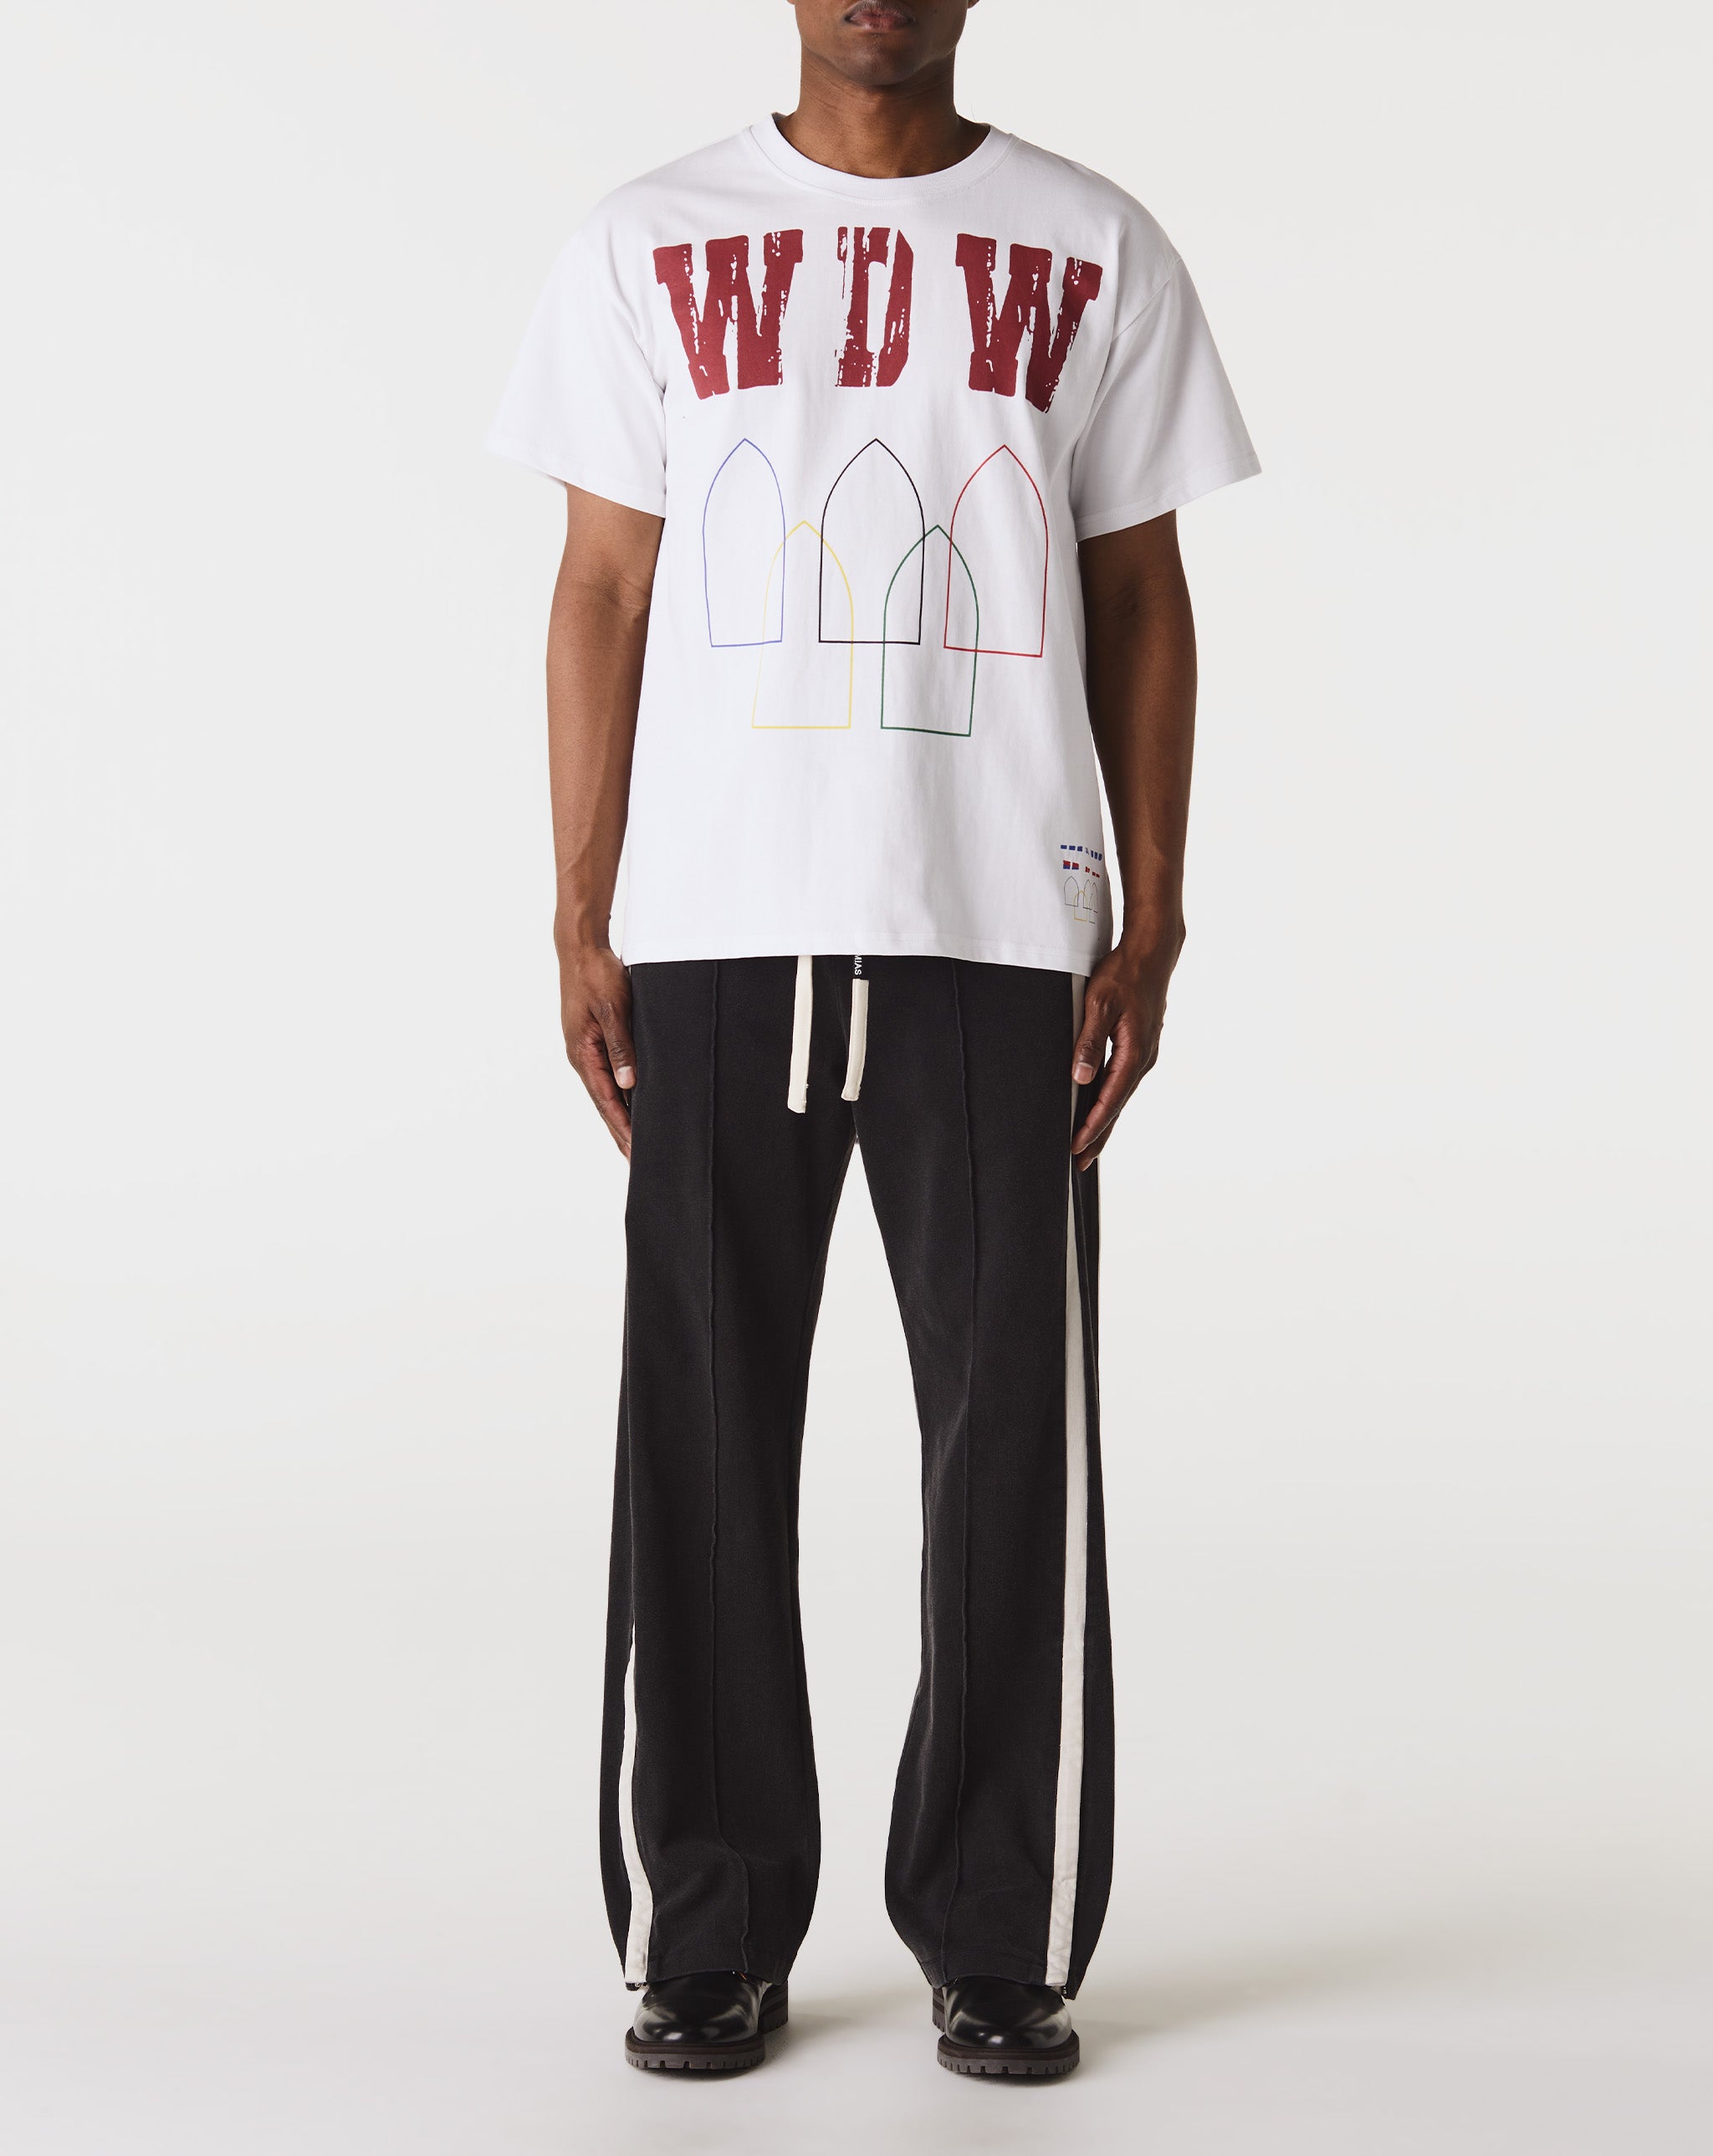 Big G-Logo Hooded Sweatshirt Training T-Shirt  - Cheap Urlfreeze Jordan outlet